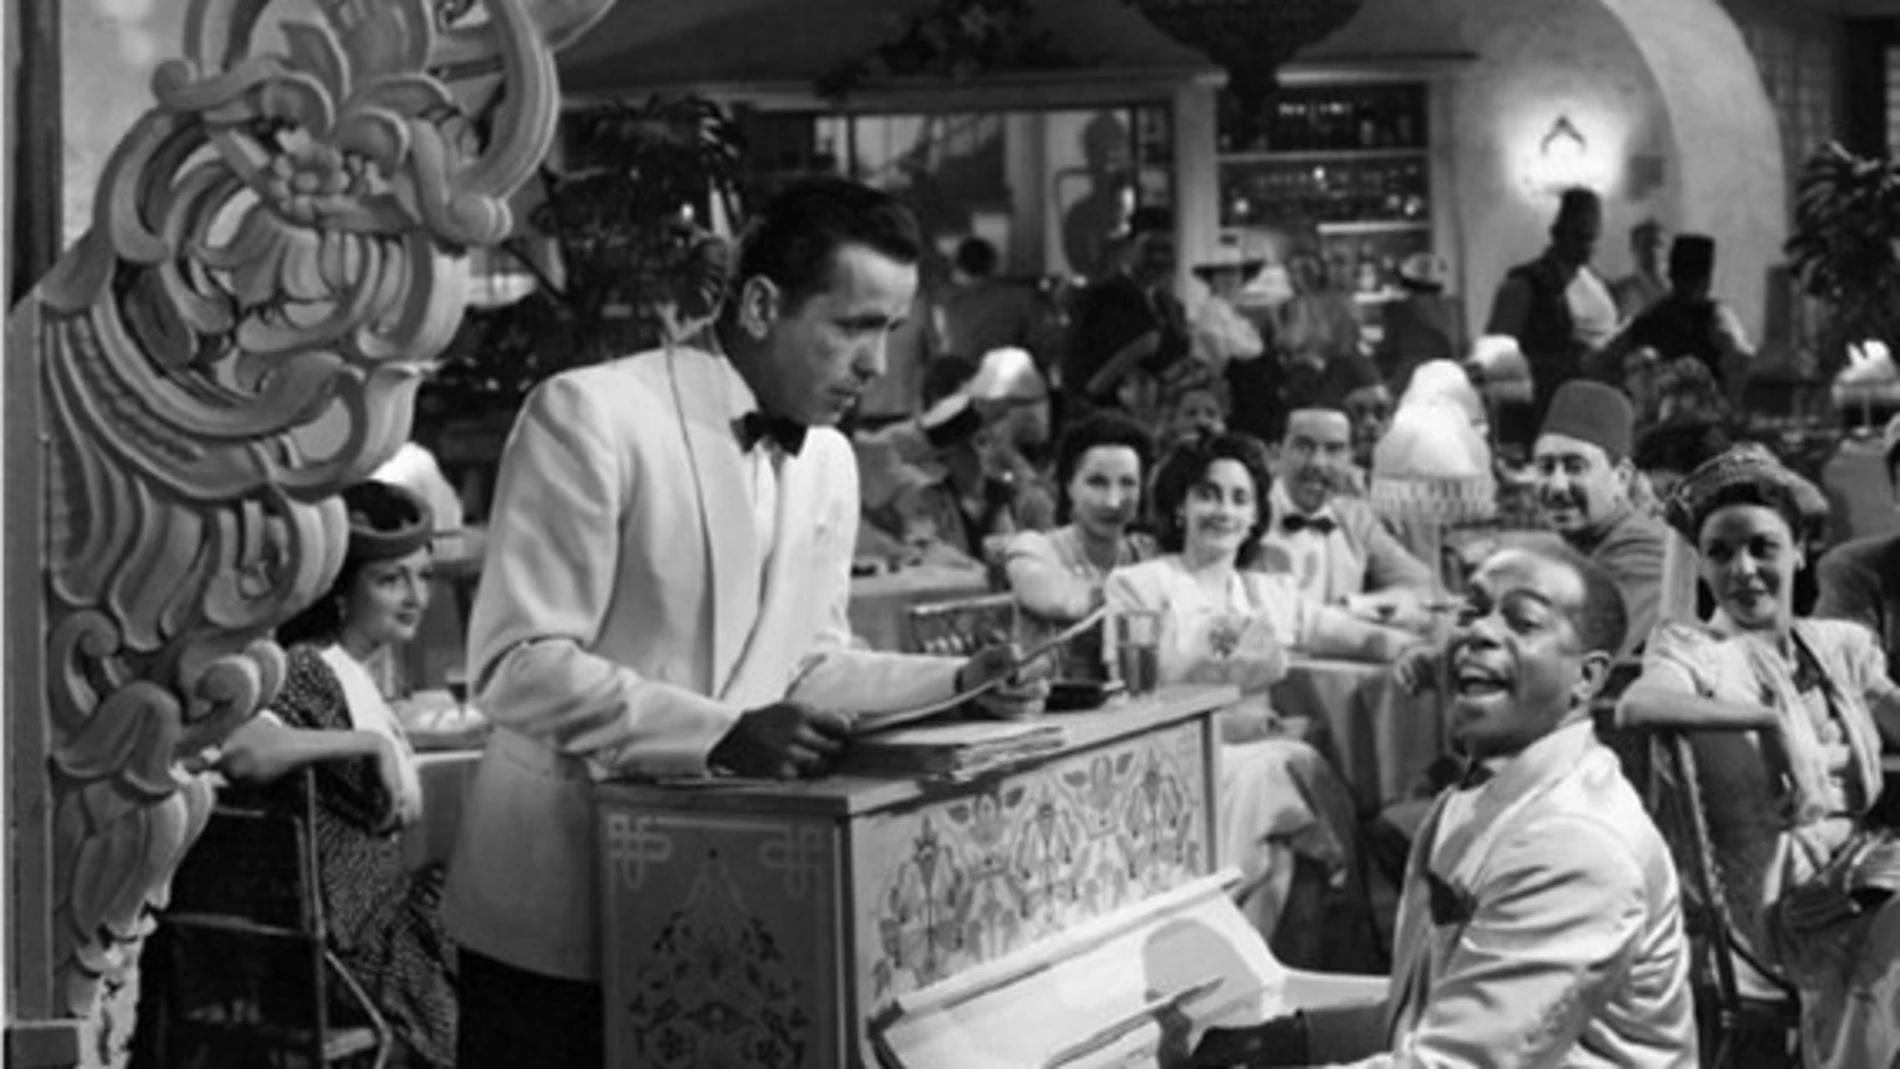 Fotograma de la película "Casablanca".